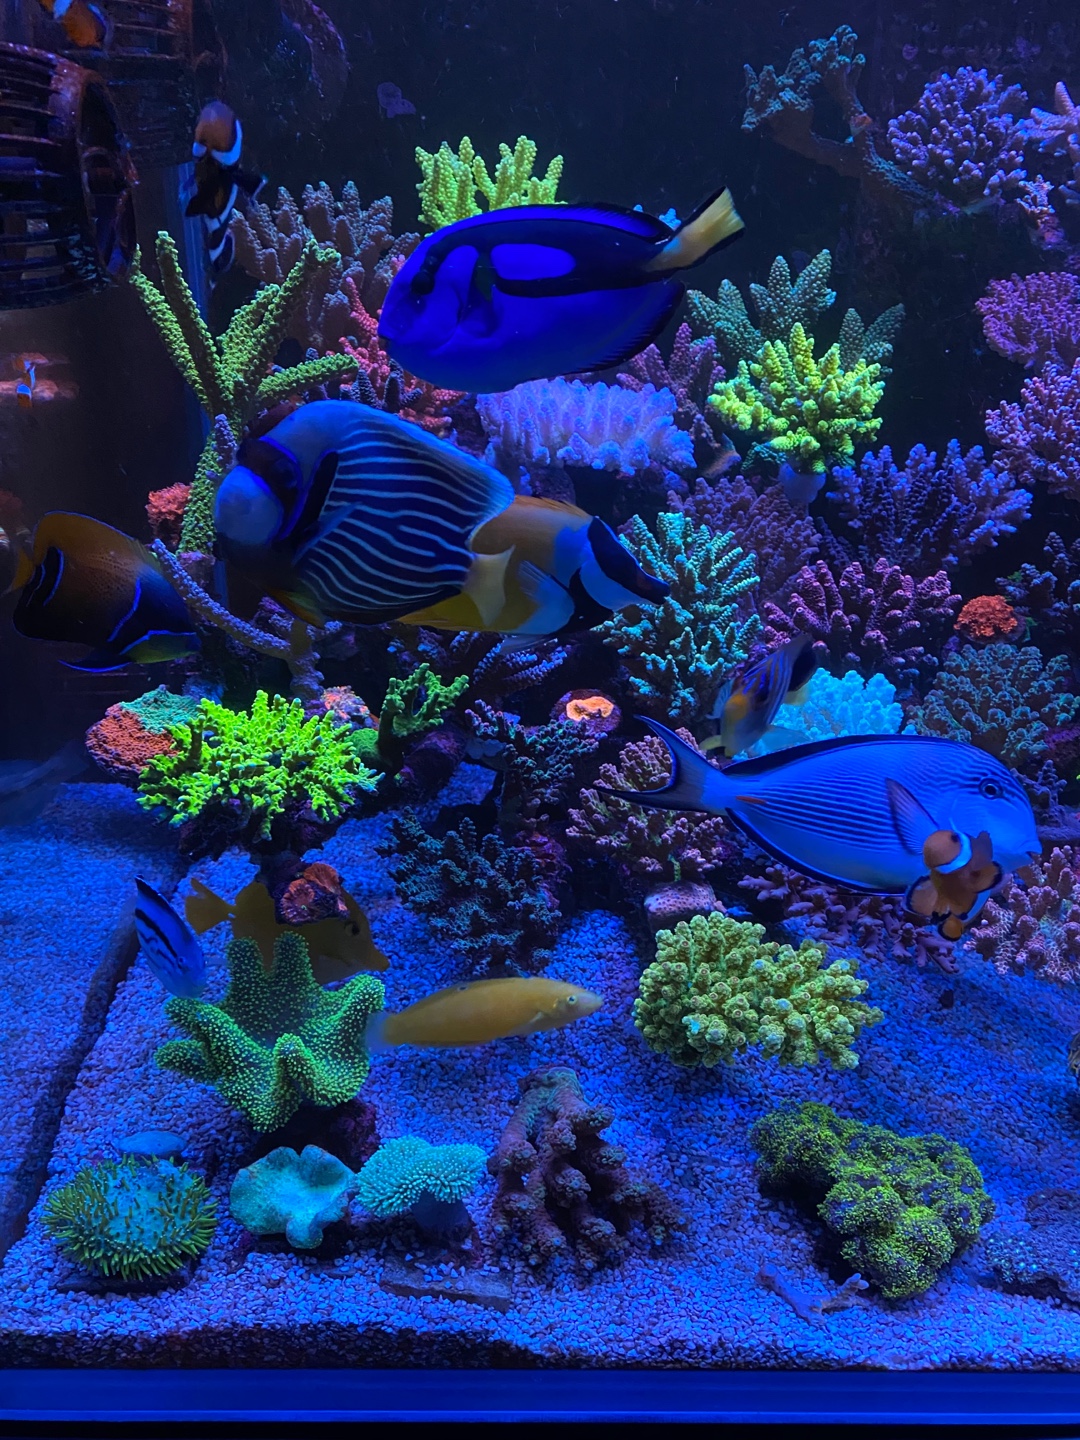 ที่ดีที่สุด-แนวปะการังพิพิธภัณฑ์สัตว์น้ำ-led-light-20223